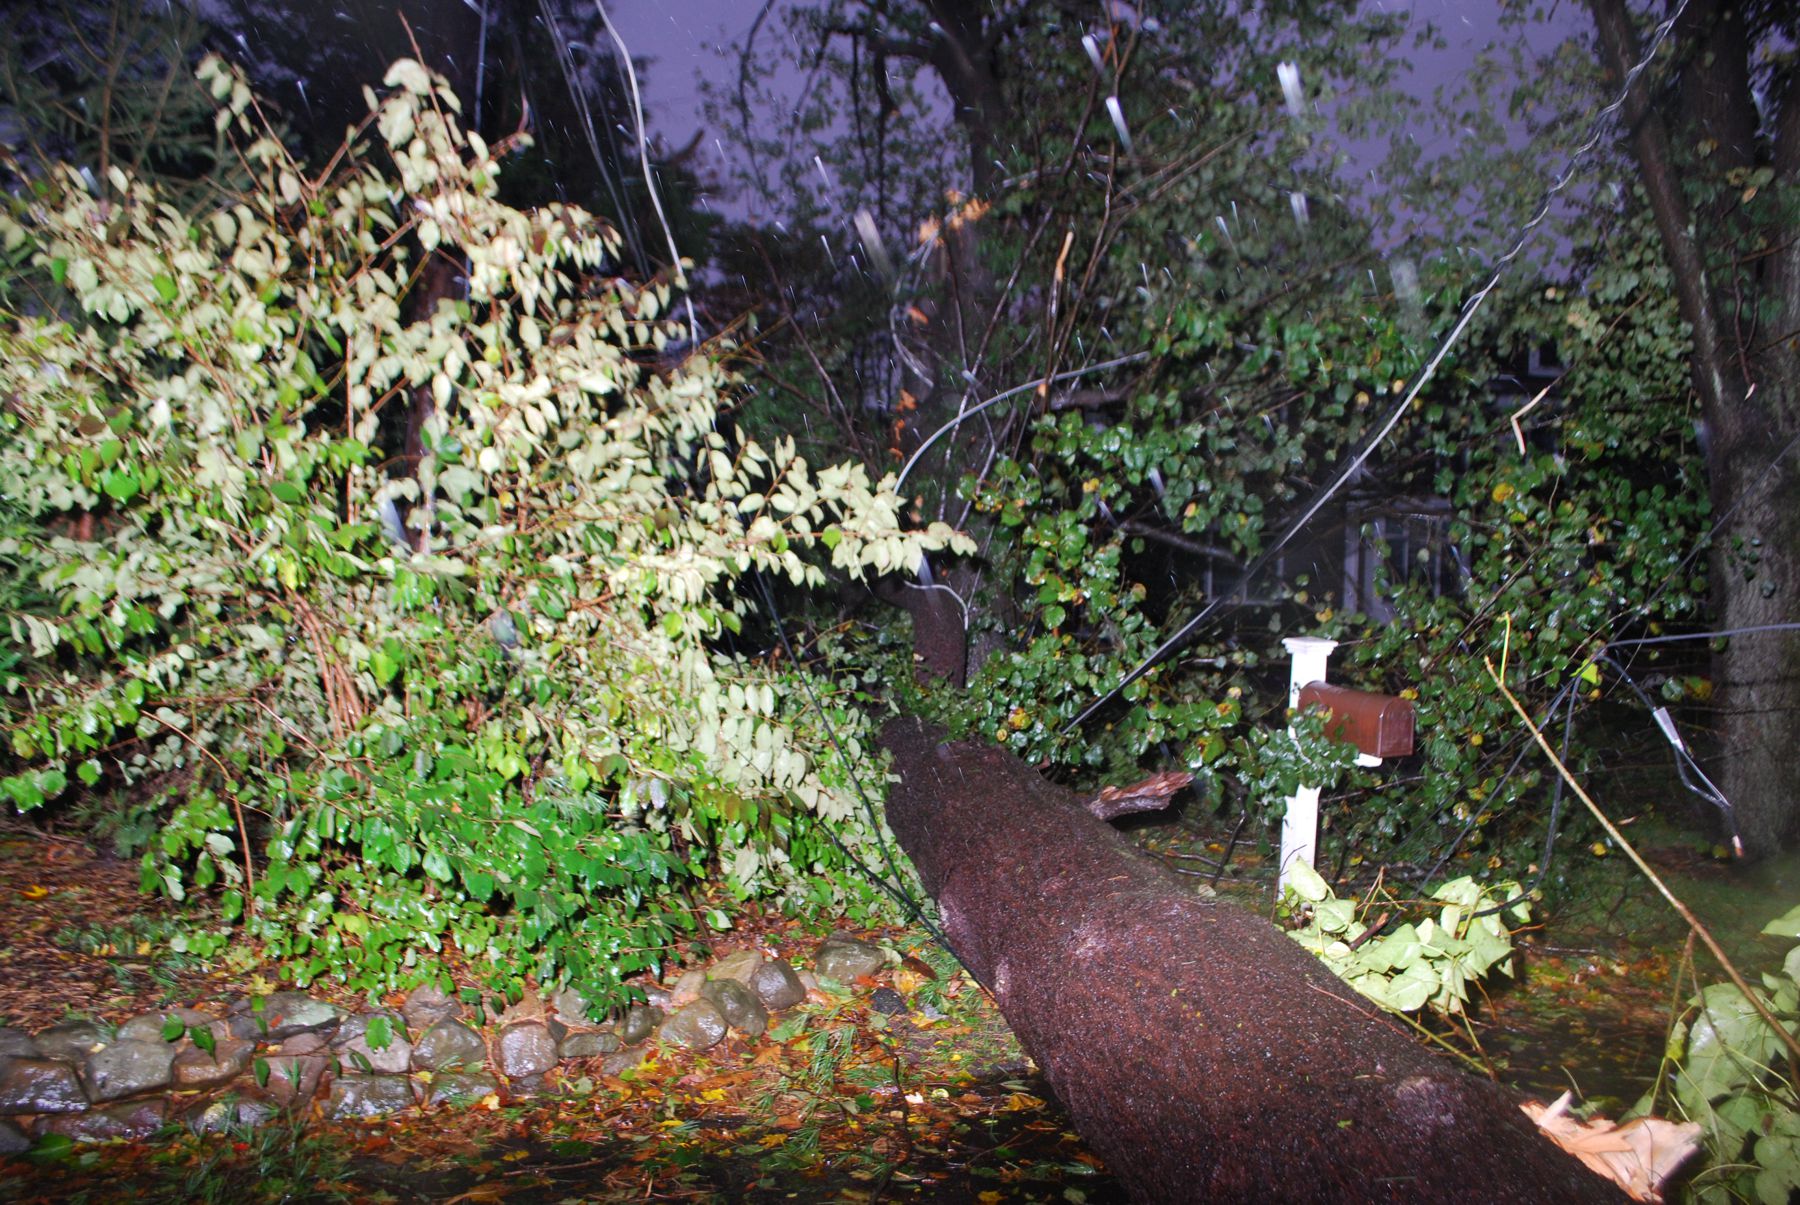 Fallen tree at night